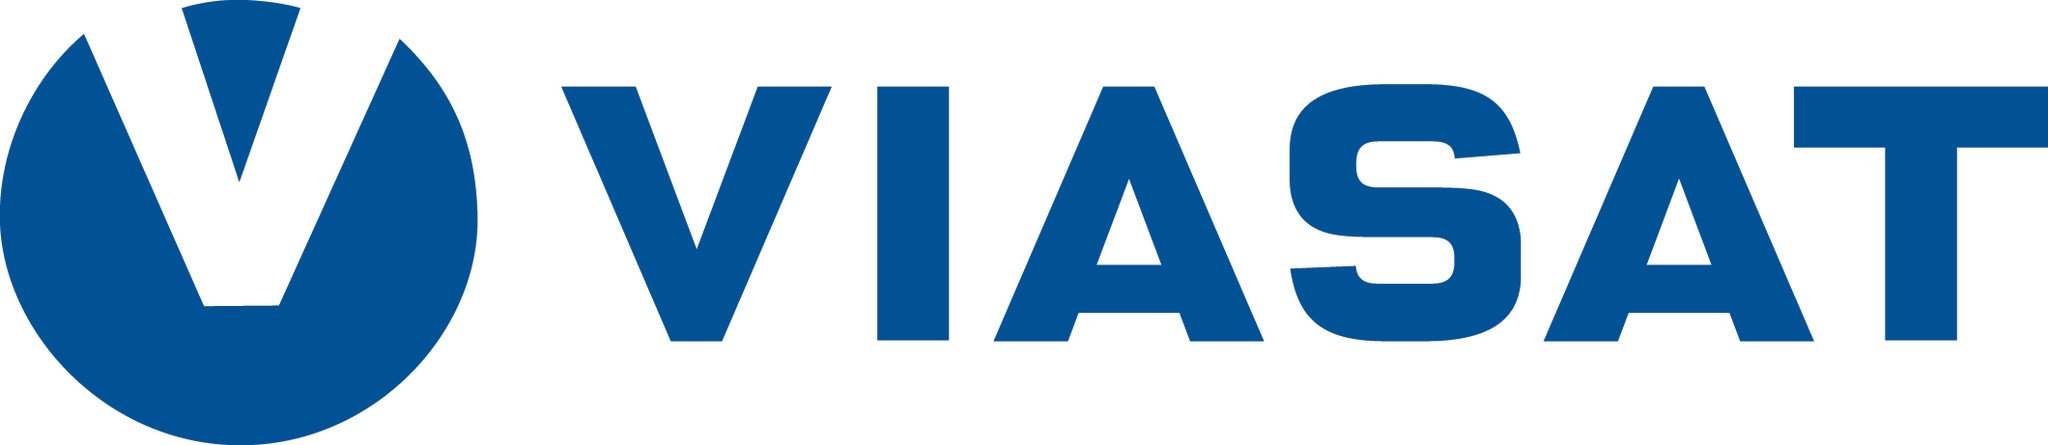 Viasat logo trimmed